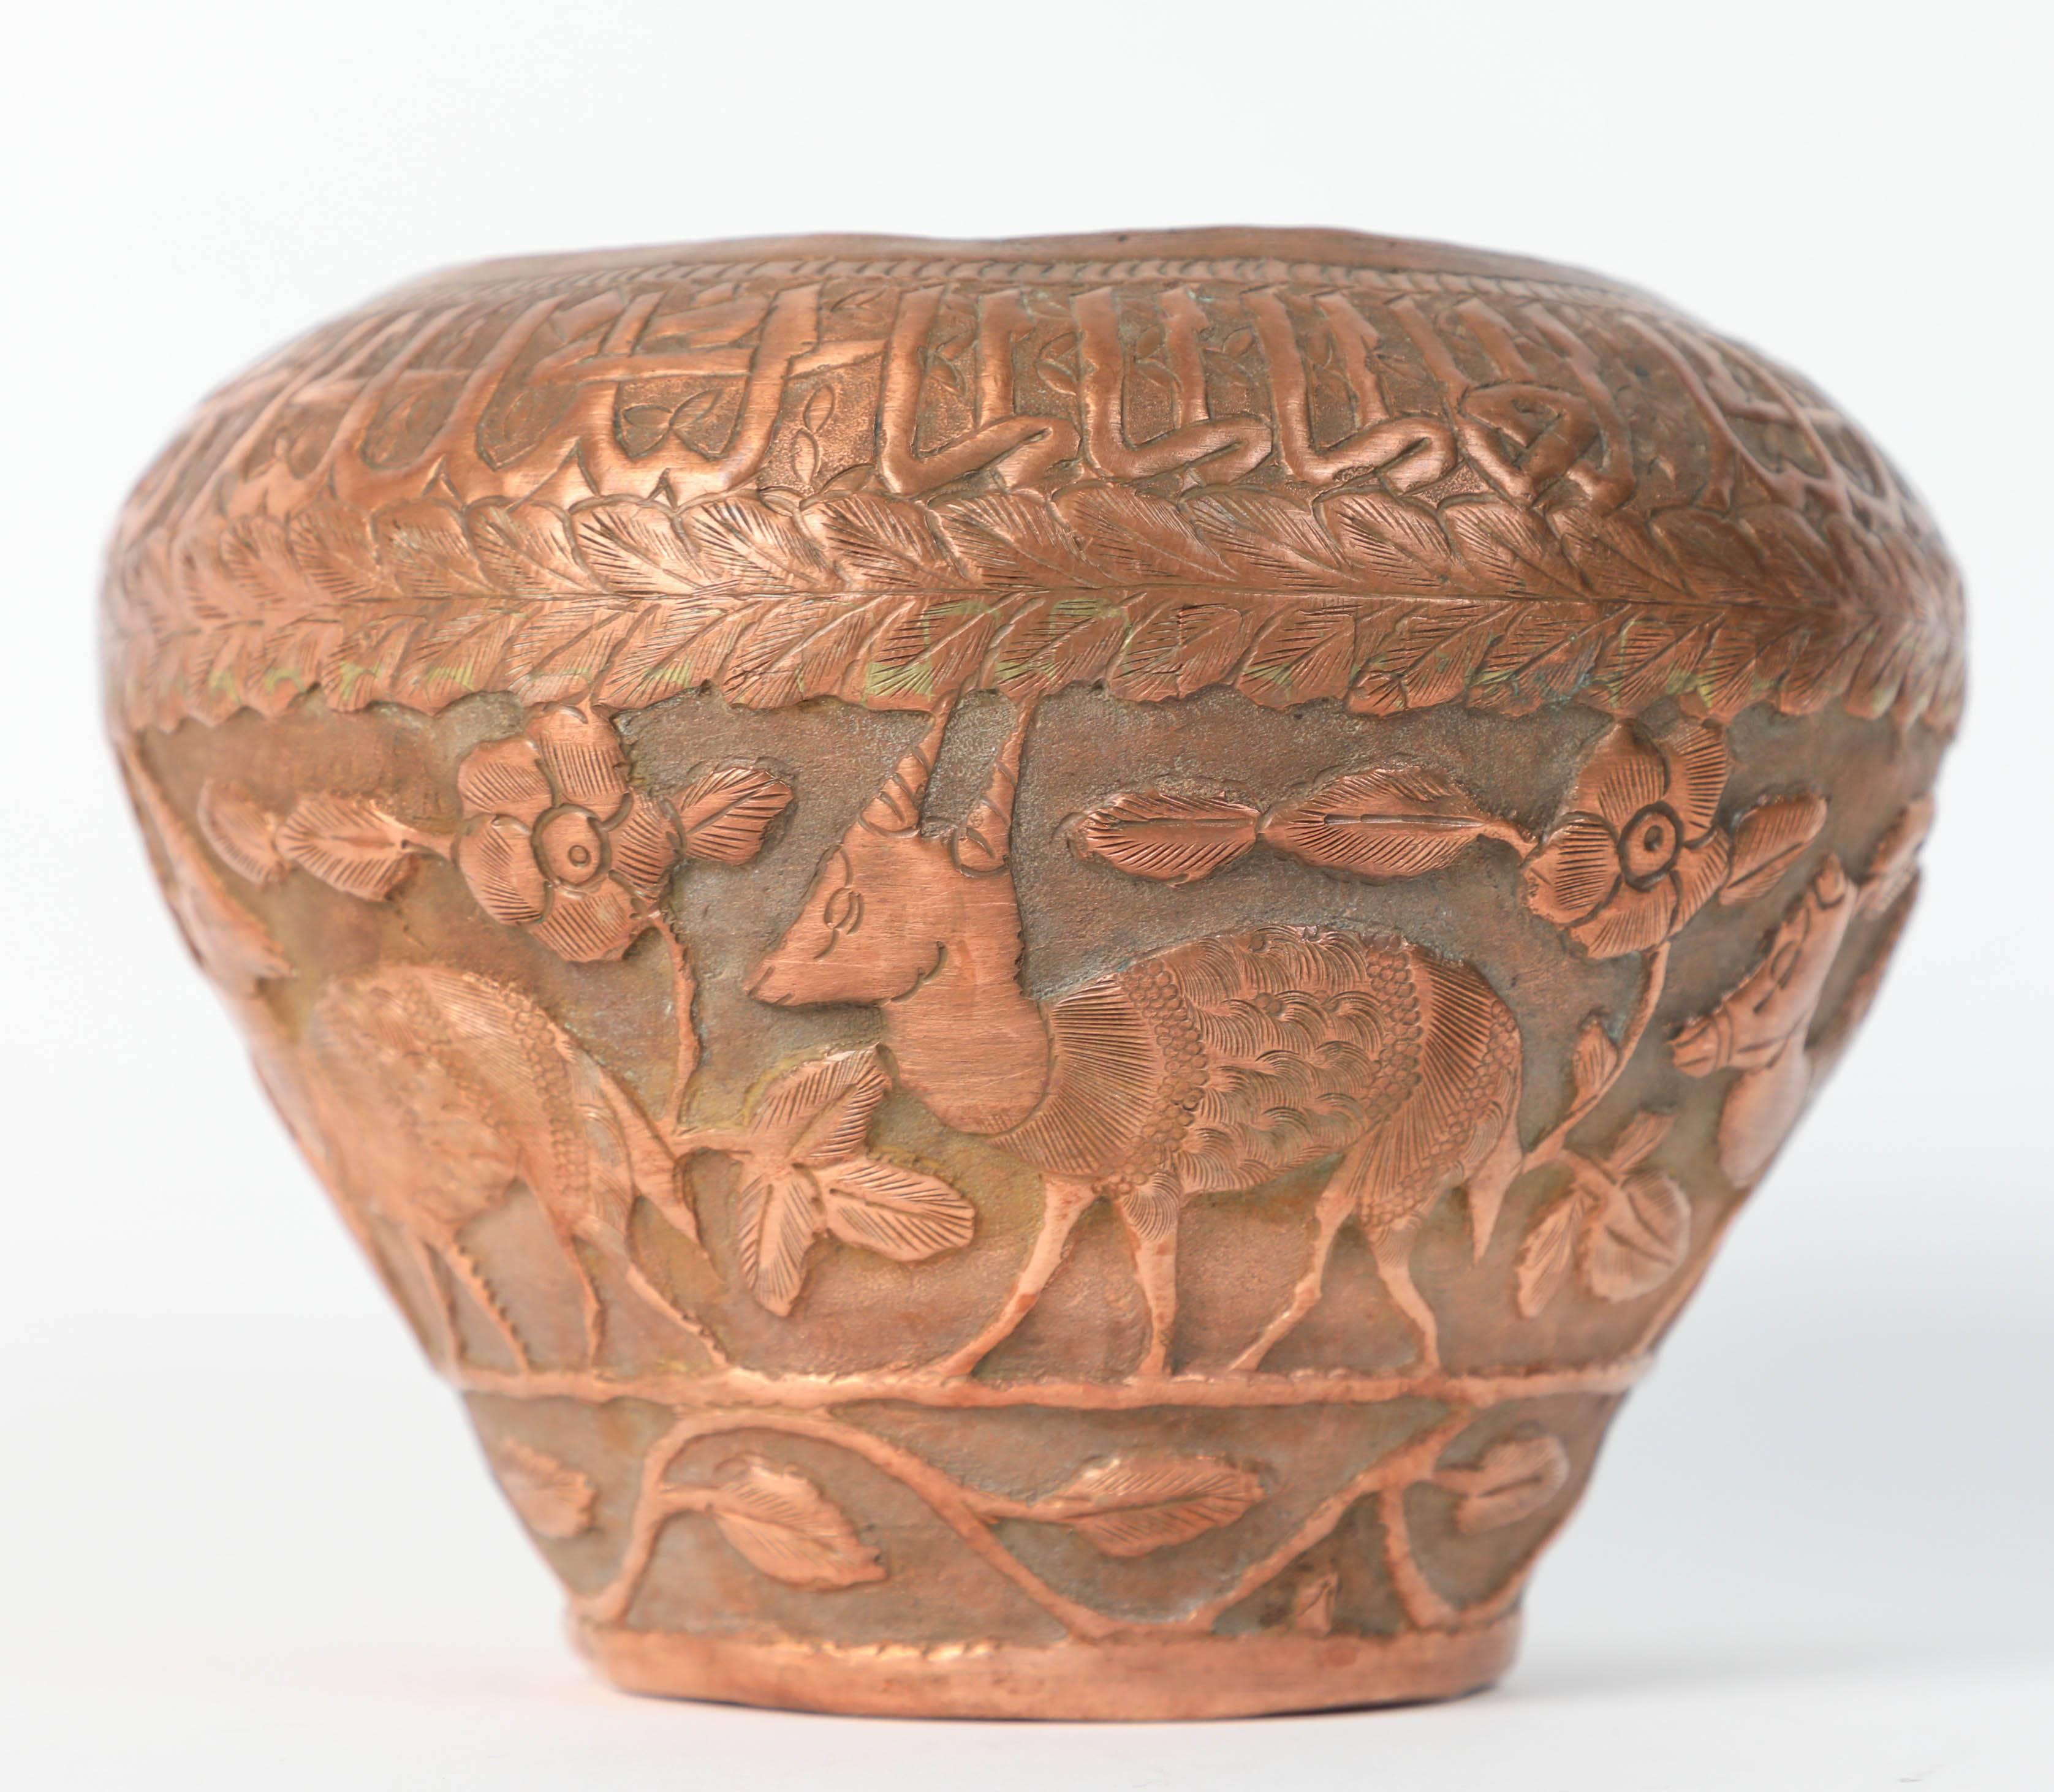 iranian copper pots